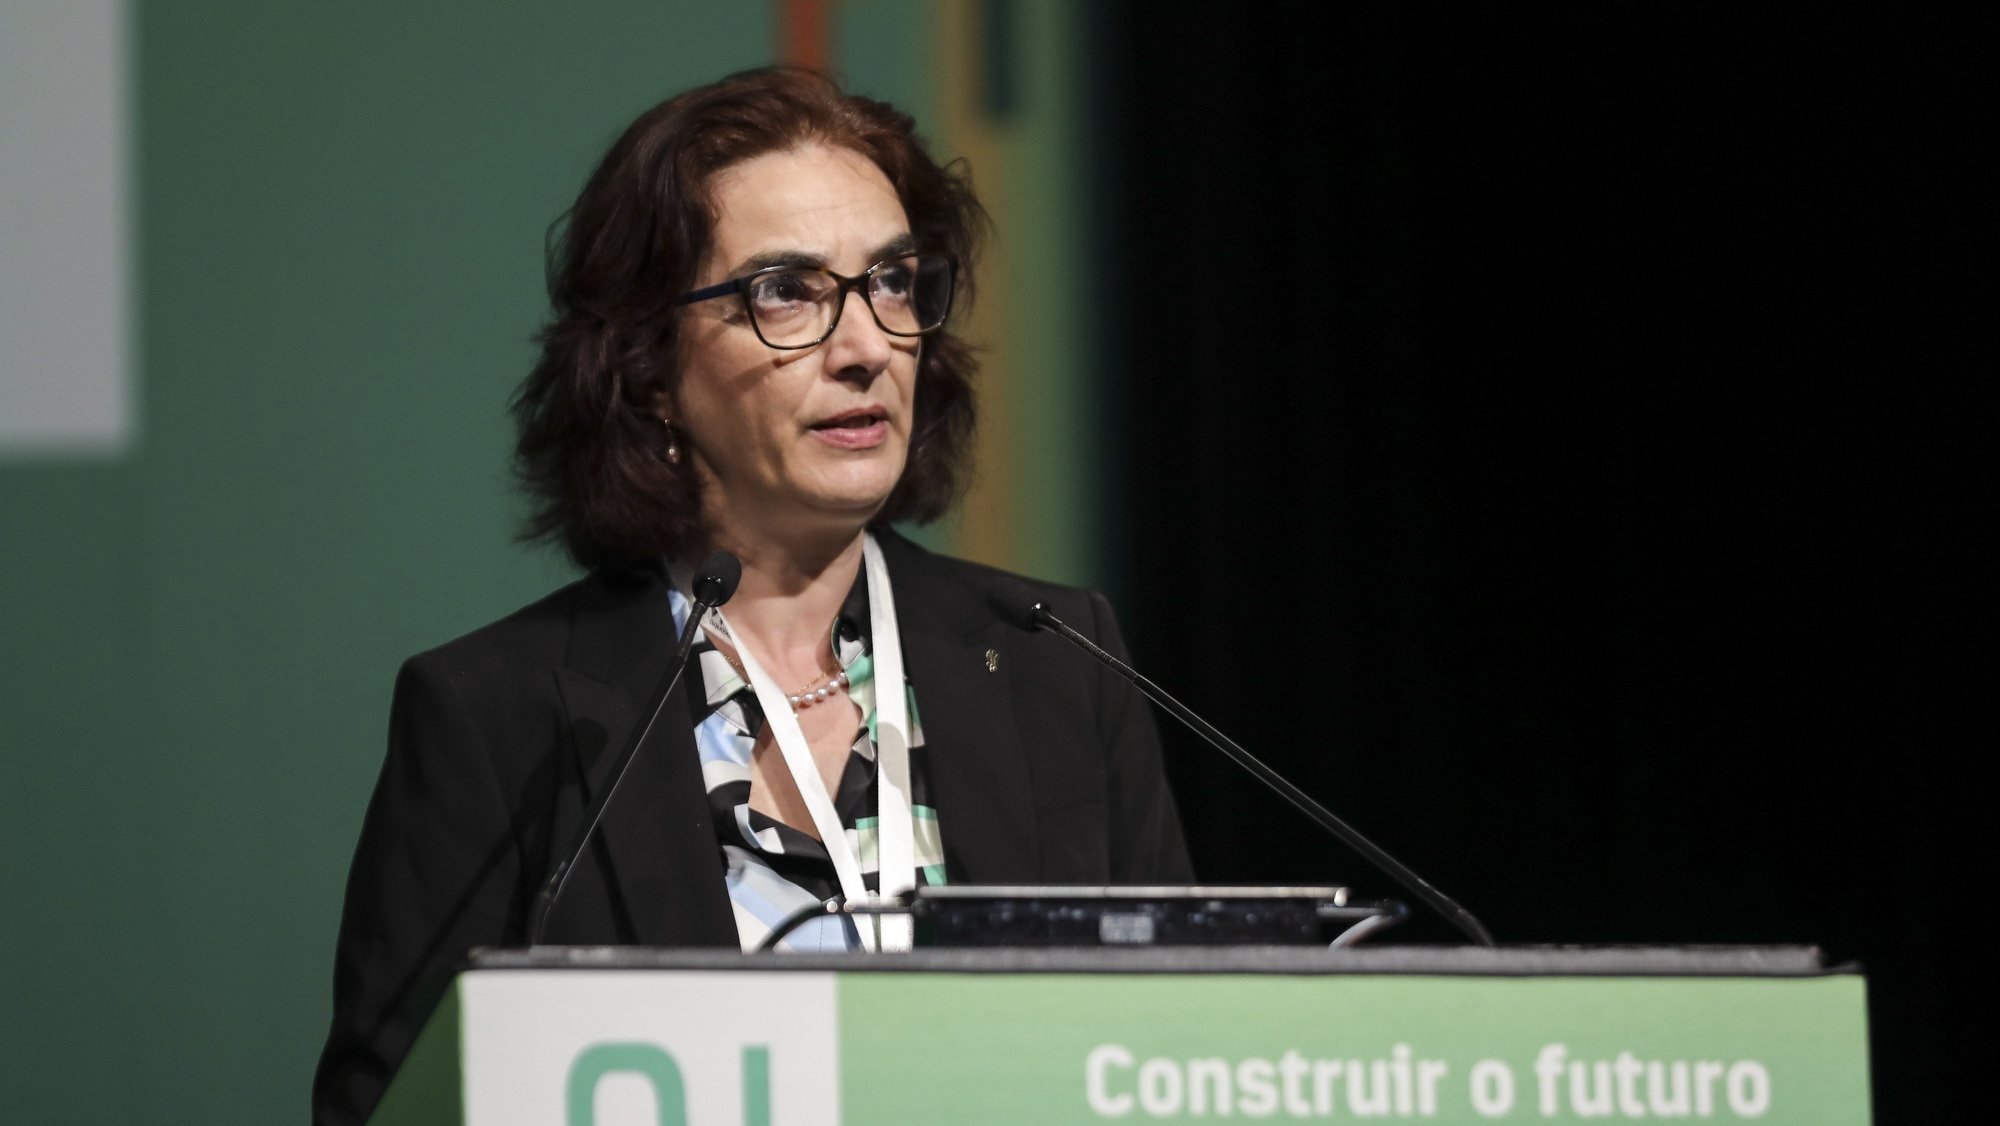 Ministra da Ciência, Tecnologia e Ensino Superior, Elvira Fortunato, intervém no Encontro Ciência 2022 a decorrer no Centro de Congressos de Lisboa, 16 de maio de 2022. MIGUEL A. LOPES/LUSA